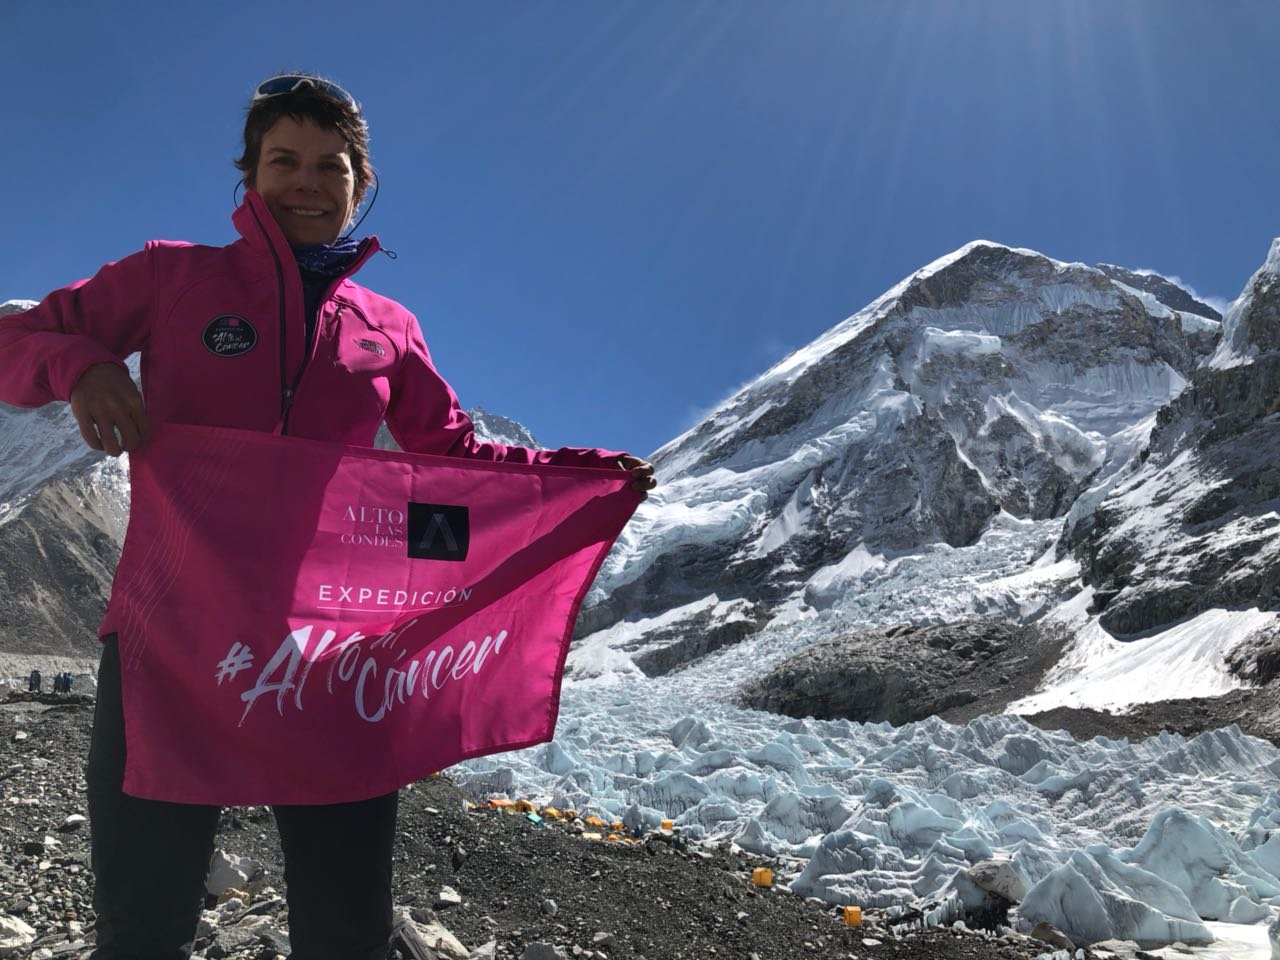 La experiencia de María Paz Valenzuela, una montañista que subió el Everest tras superar el cáncer